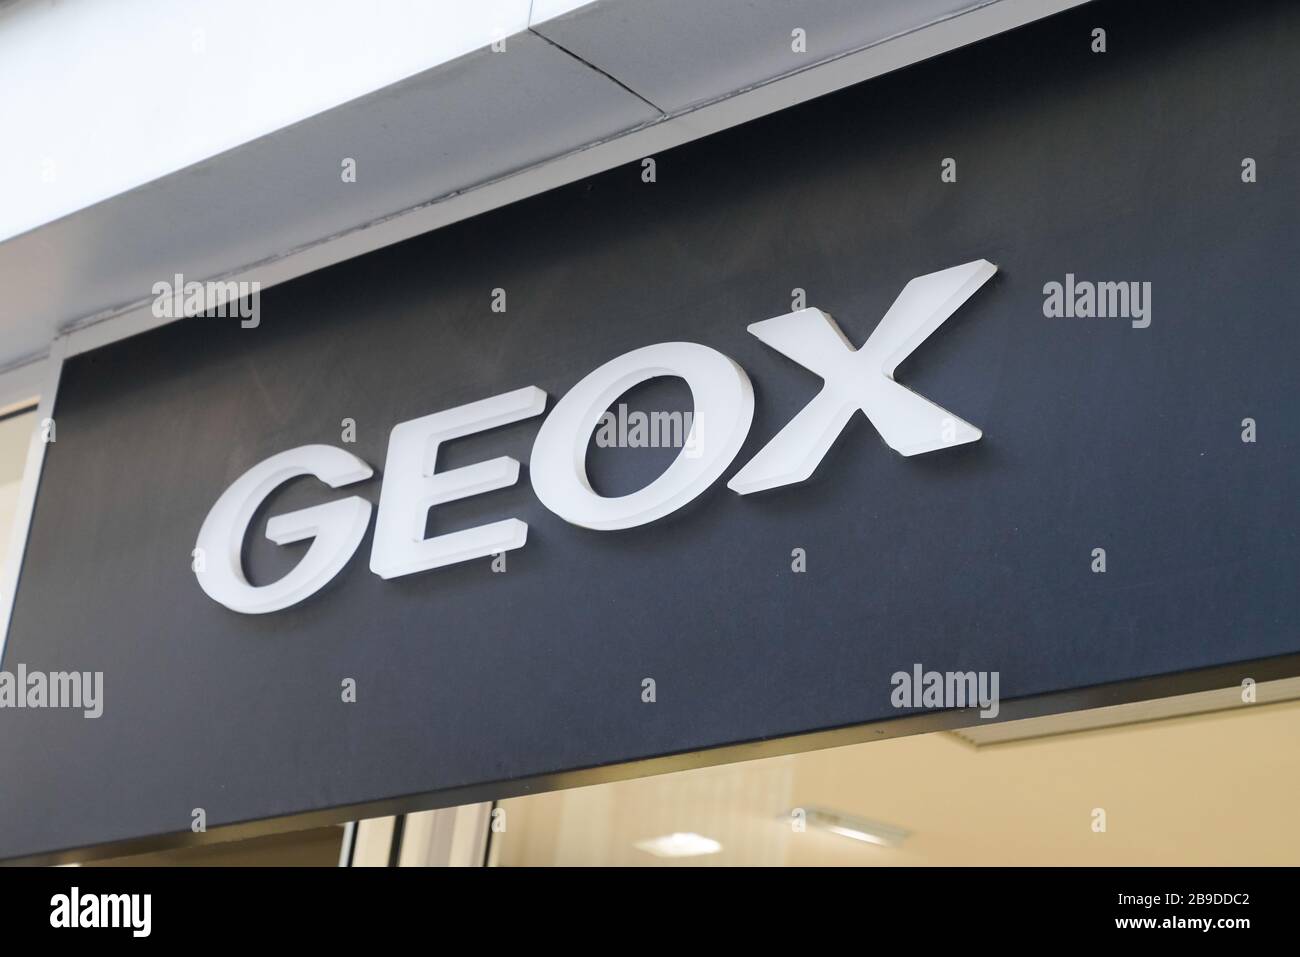 Resaltar Metro Estéril Tienda geox fotografías e imágenes de alta resolución - Página 2 - Alamy